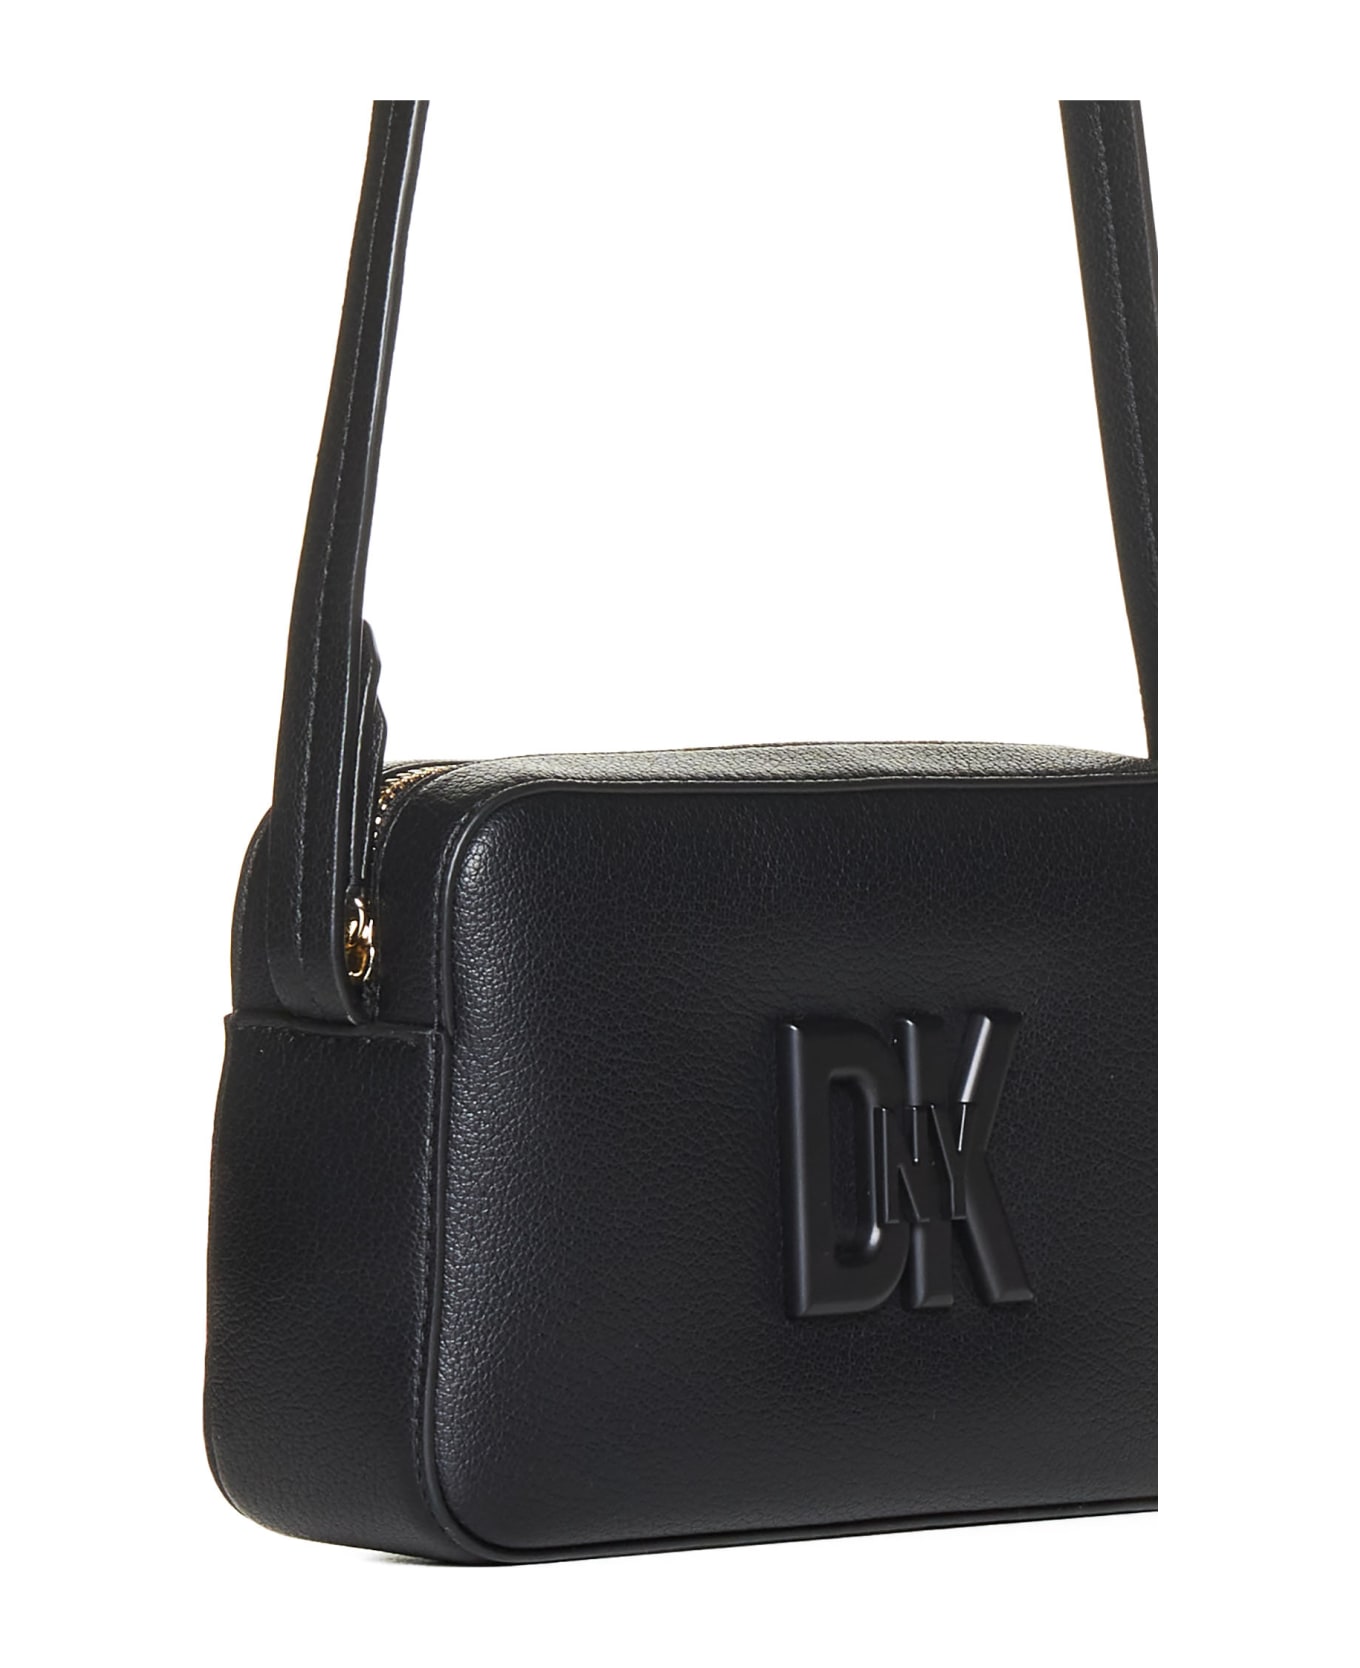 DKNY Shoulder Bag - Black/black